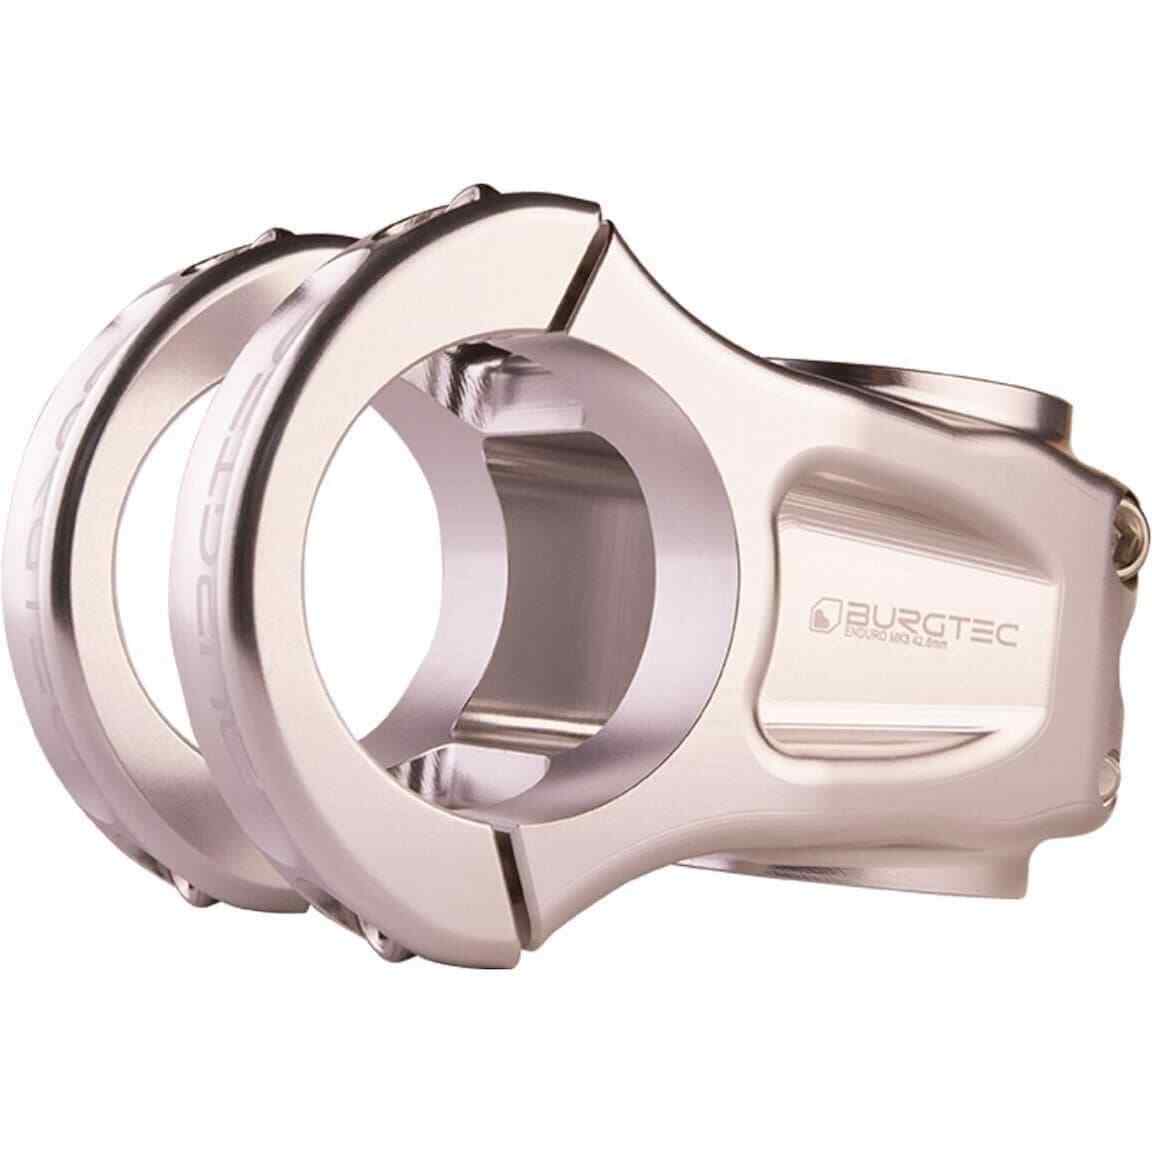 Burgtec Enduro MK3 35mm Stem - Silver Cena wysyłkowa